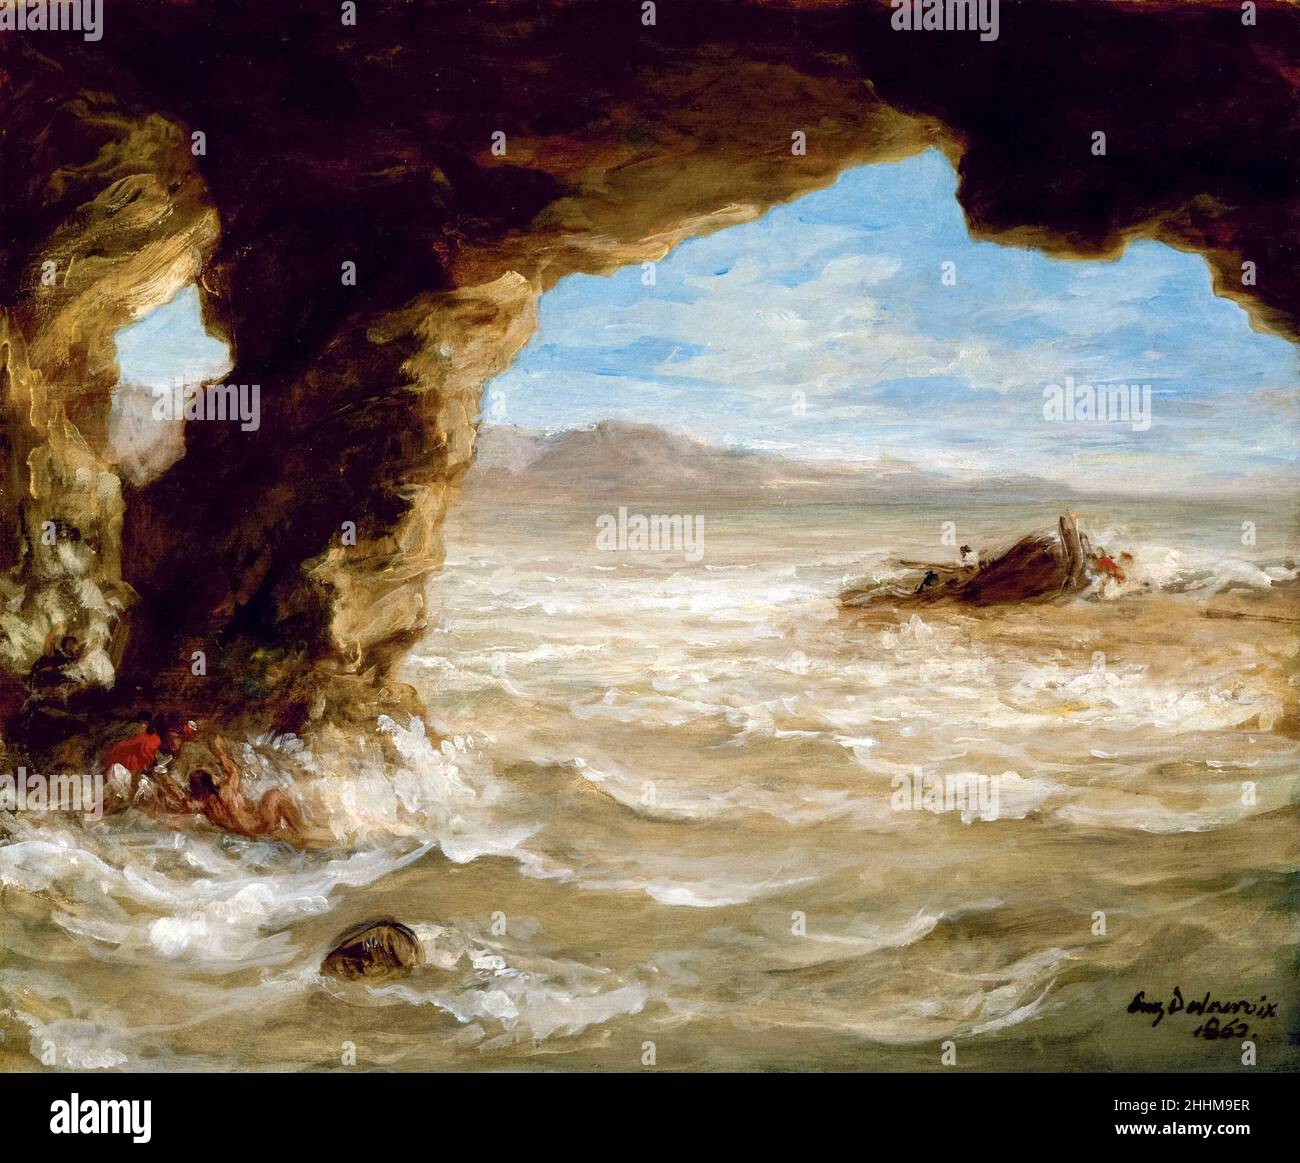 Naufrage sur la côte, peinture d'Eugene Delacroix, 1862 Banque D'Images